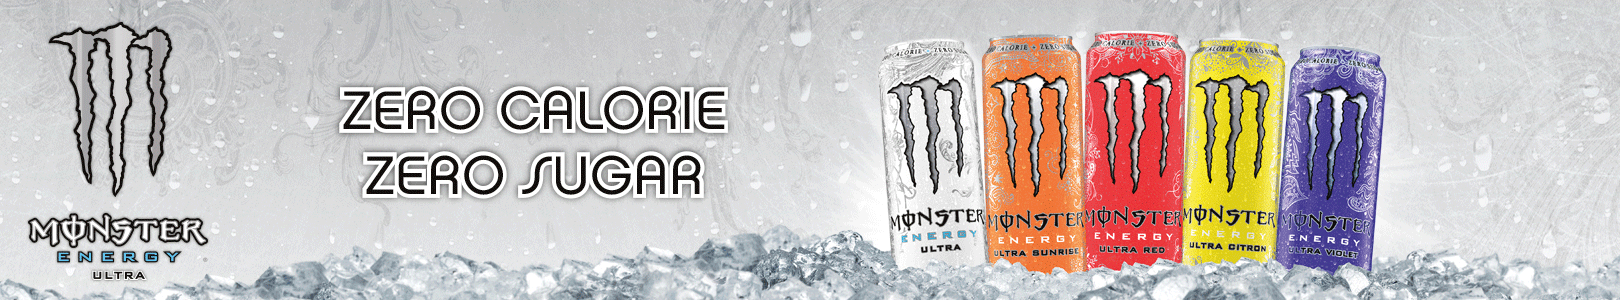 MonsterEnergy-banner2.png (421 KB)